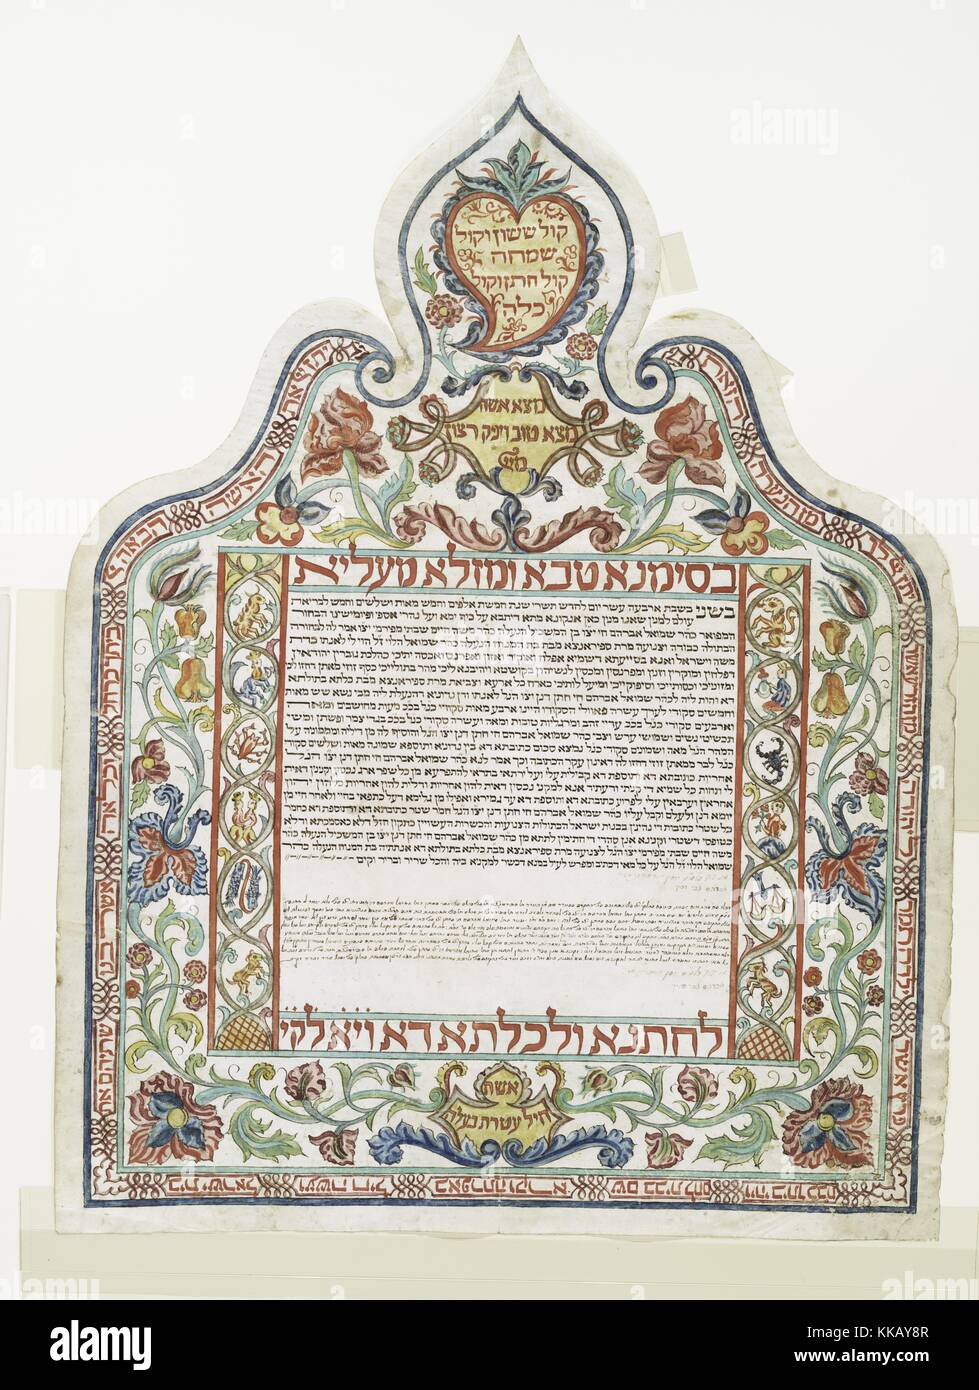 Un allestita Ketubah, che è una forma di contratto di matrimonio in ebraico la tradizione religiosa, Ancona, Italia, 1755. Dalla Biblioteca Pubblica di New York. Foto Stock